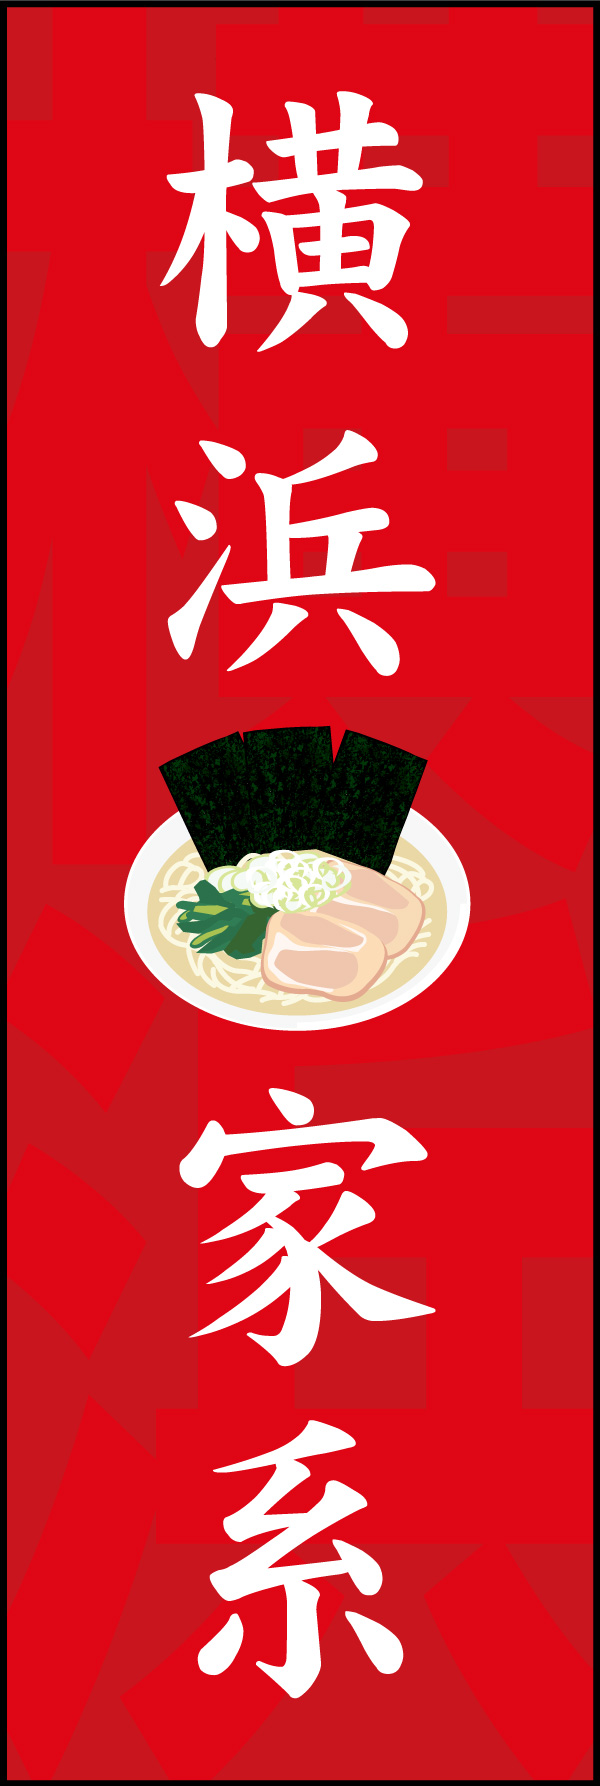 家系拉麺(らーめん) 02 「横浜家系」ののぼりです。家系ラーメン発祥の「横浜」を入れながらシンプルなデザインにしました。(Y.M)